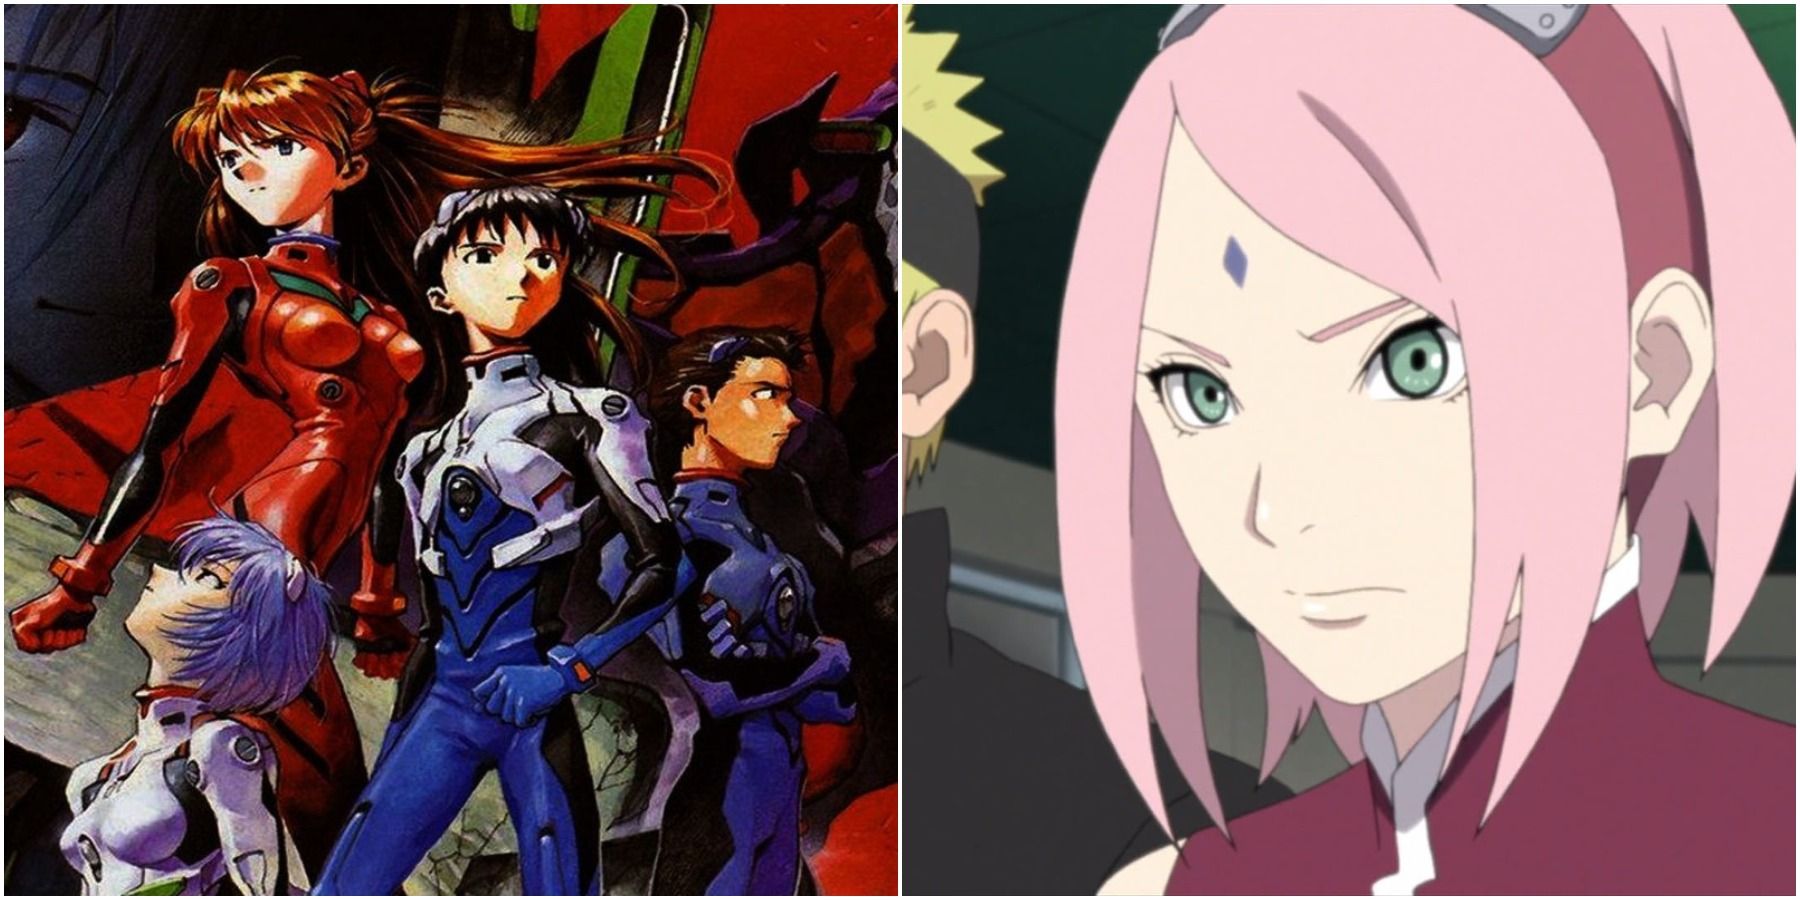 Neon Genesis Evangelion characters and Sakura Haruno from Naruto